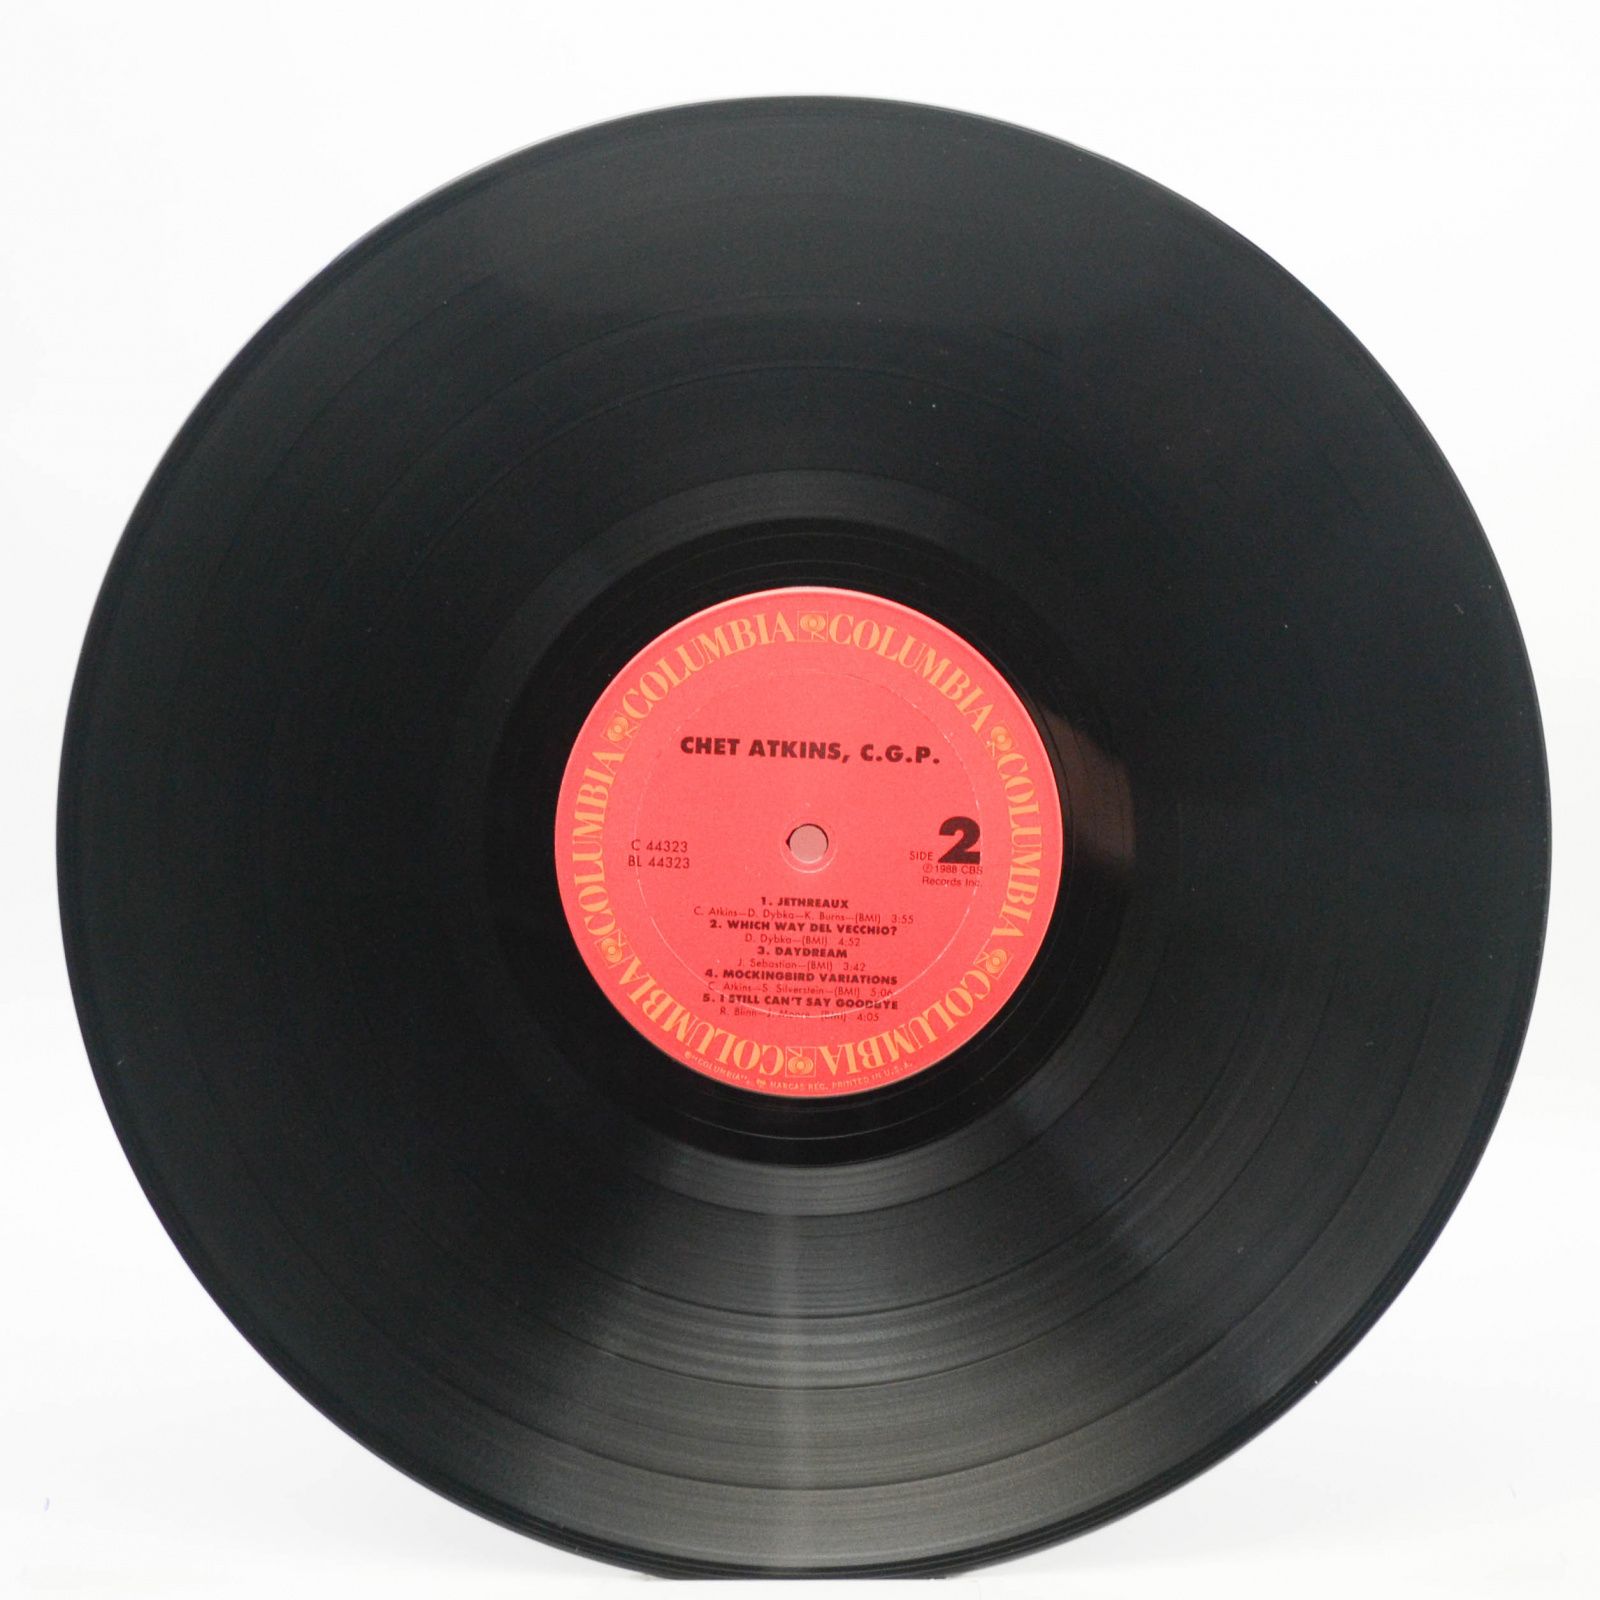 Chet Atkins — Chet Atkins C.G.P. (1-st, USA), 1988